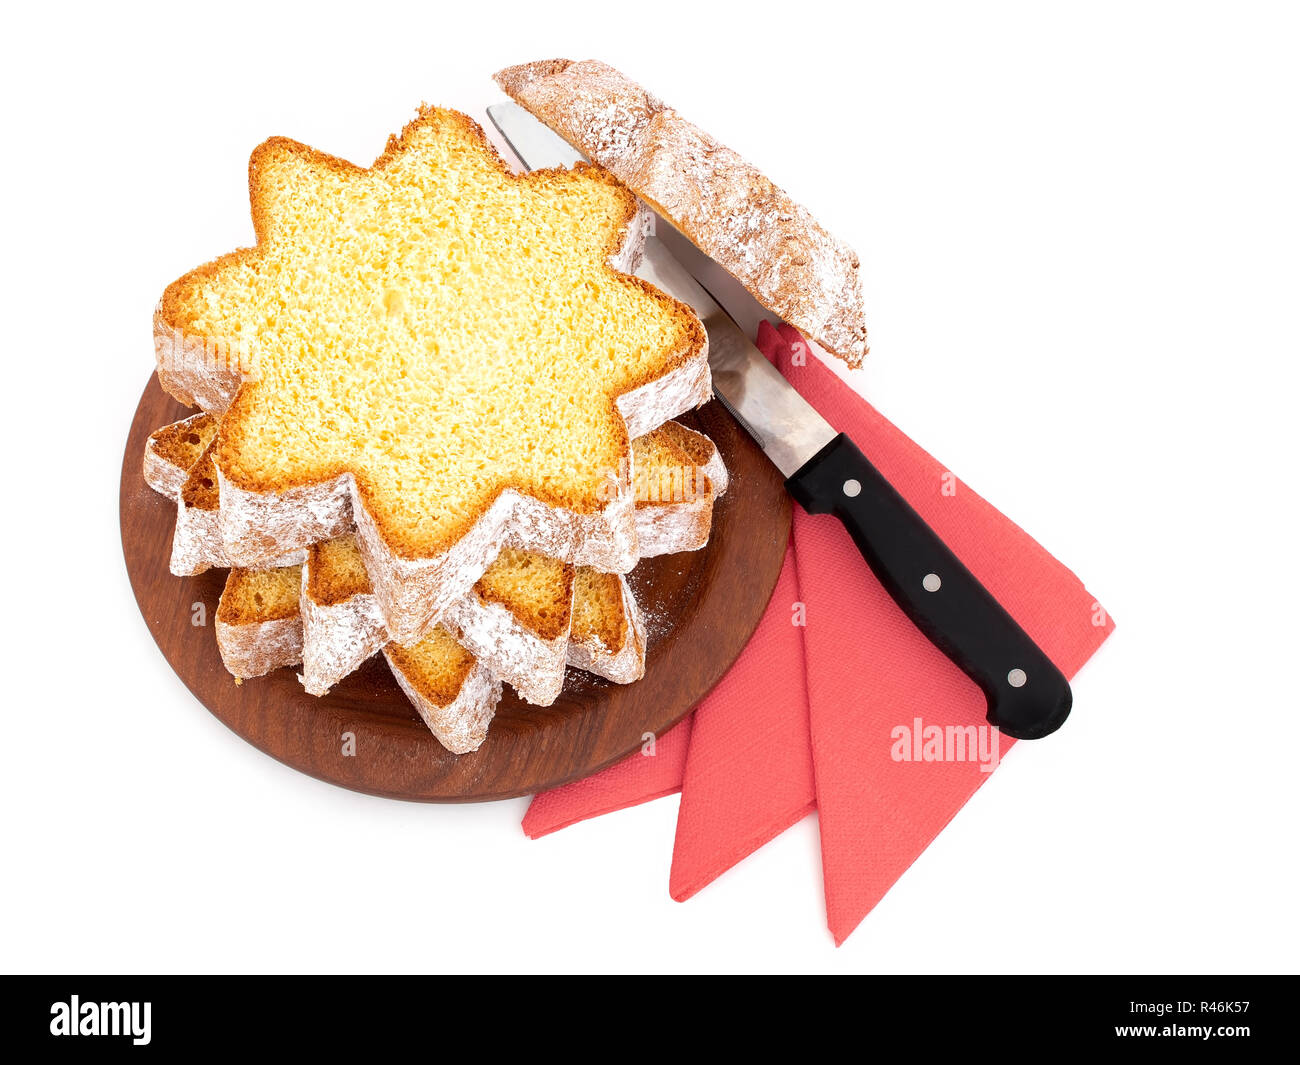 In Scheiben geschnitten Pandoro, süßen italienischen Hefe Brot, traditionelle Weihnachten behandeln. Mit roten Servietten und Messer auf Weiß. Overhead flach anzeigen. Stockfoto